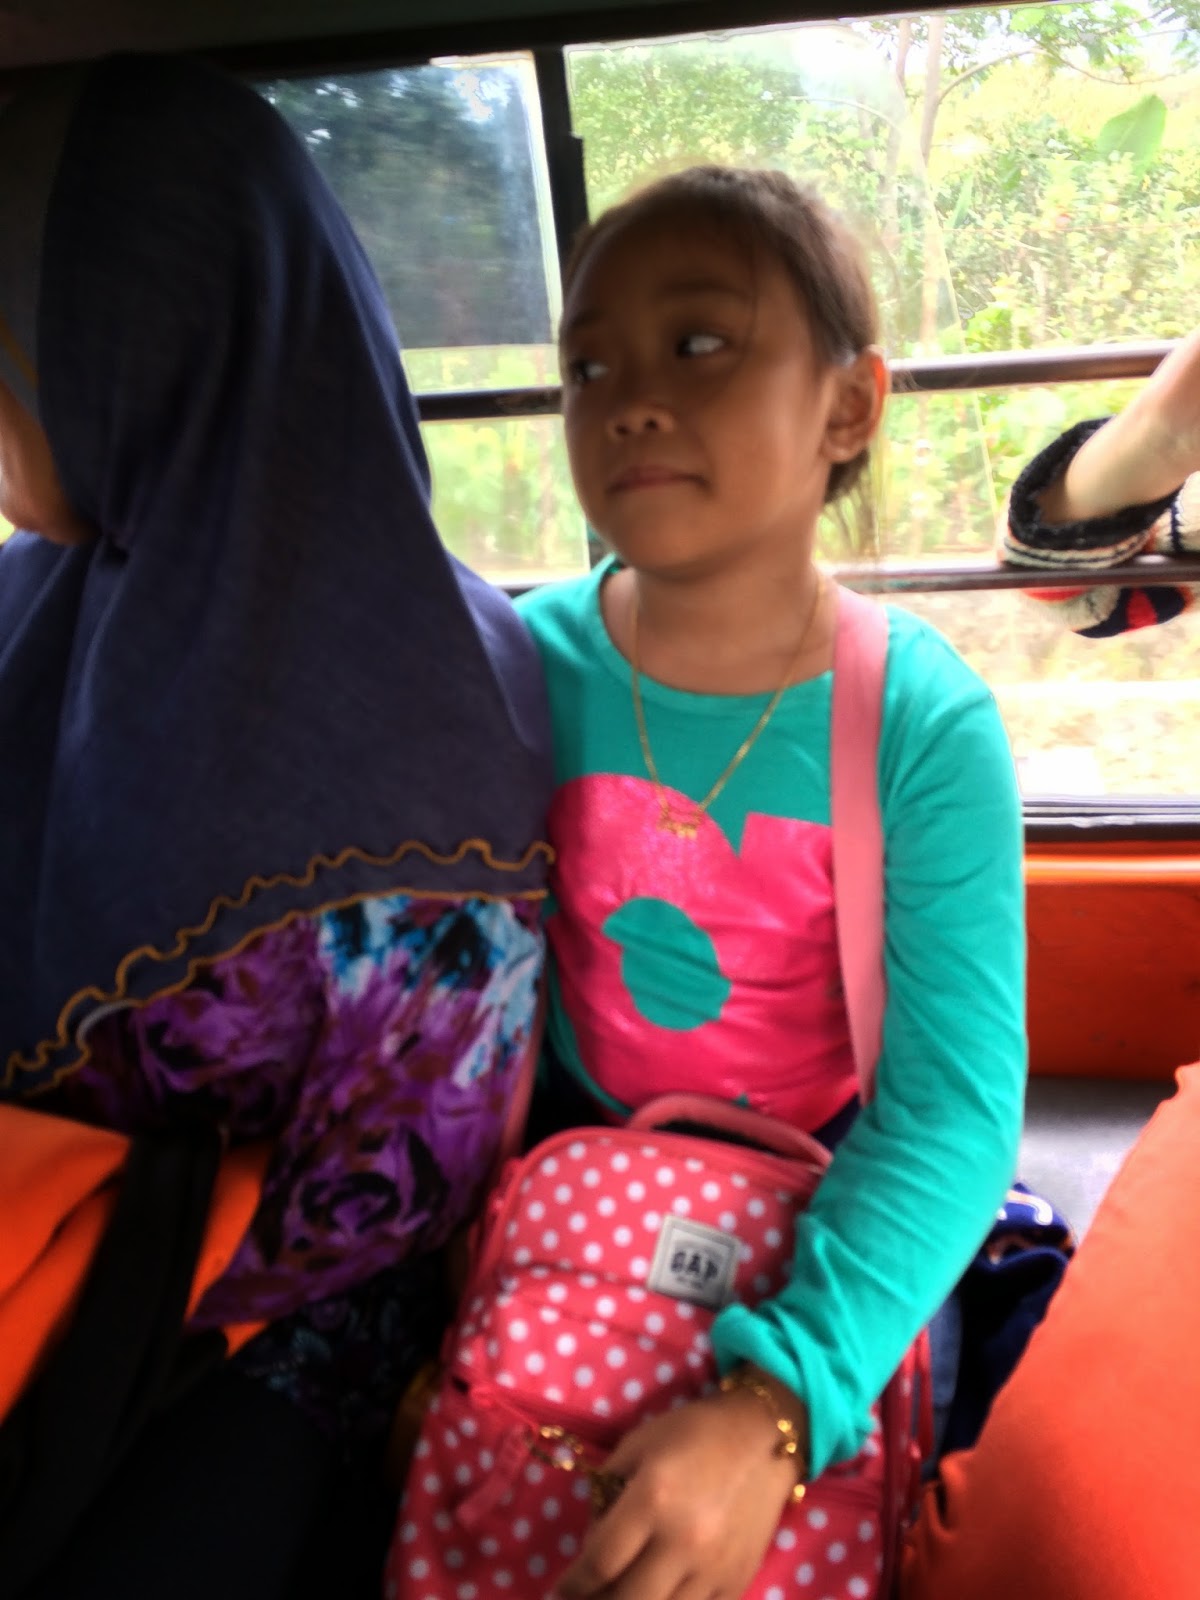 Harga Wrap Kereta Di Malaysia Mudik Dd